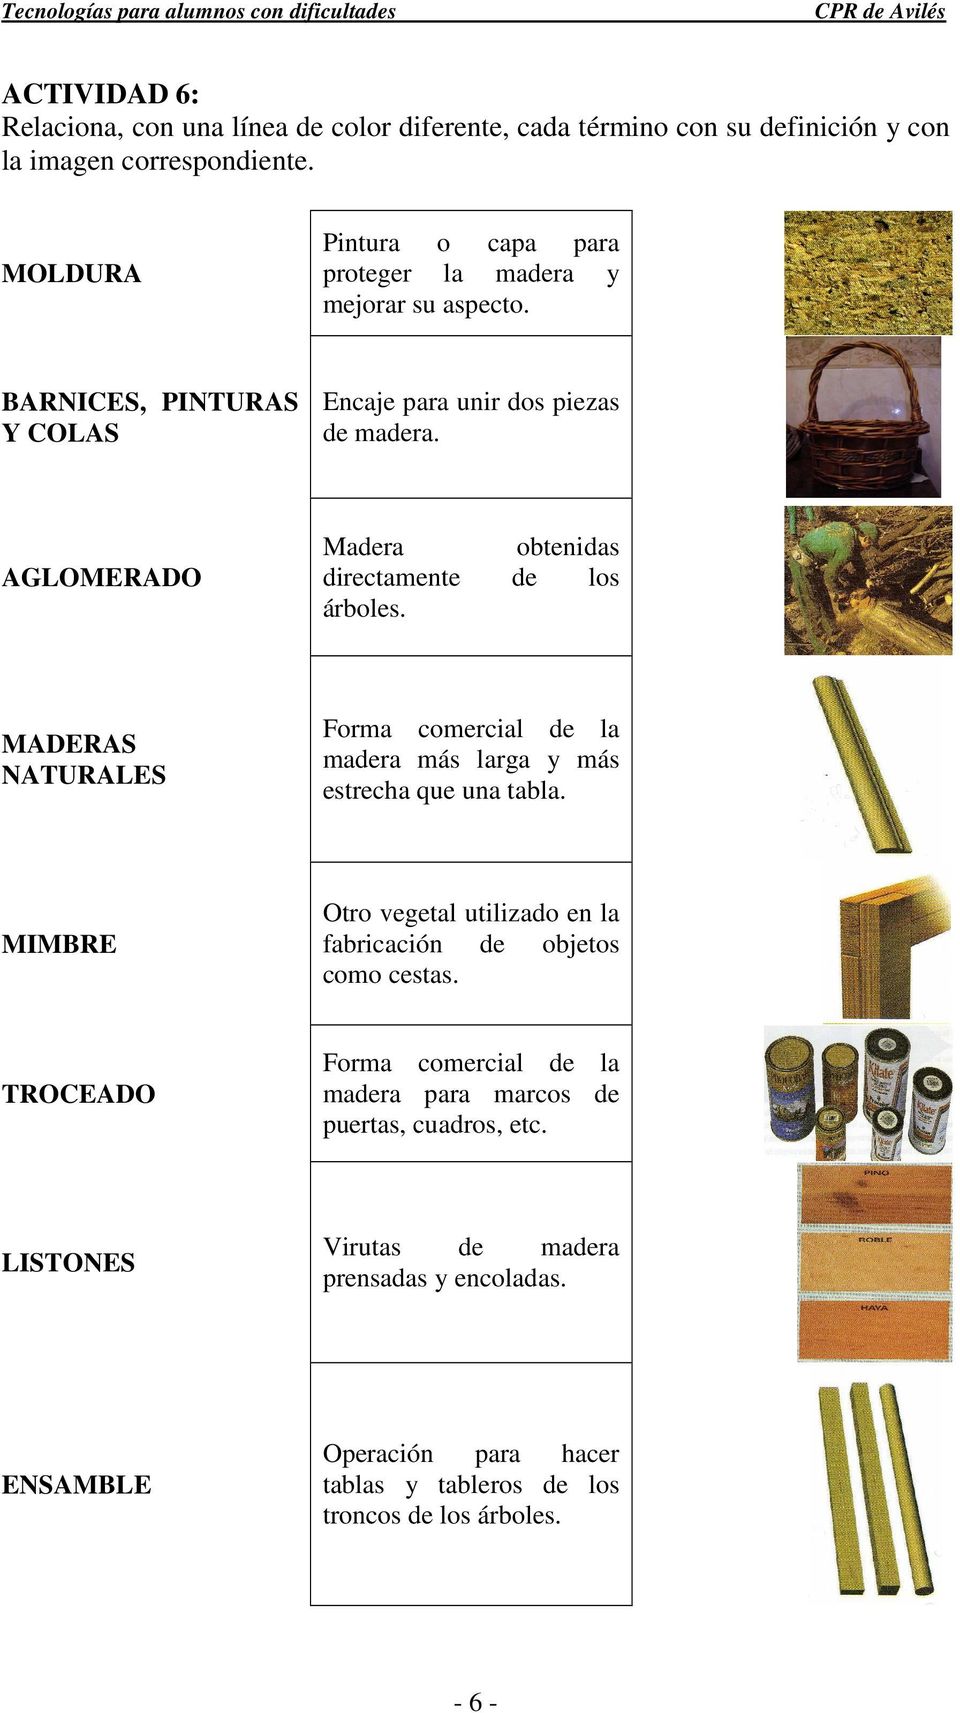 orma comercial de la madera más larga y más estrecha que una tabla. tro vegetal utilizado en la fabricación de objetos como cestas.